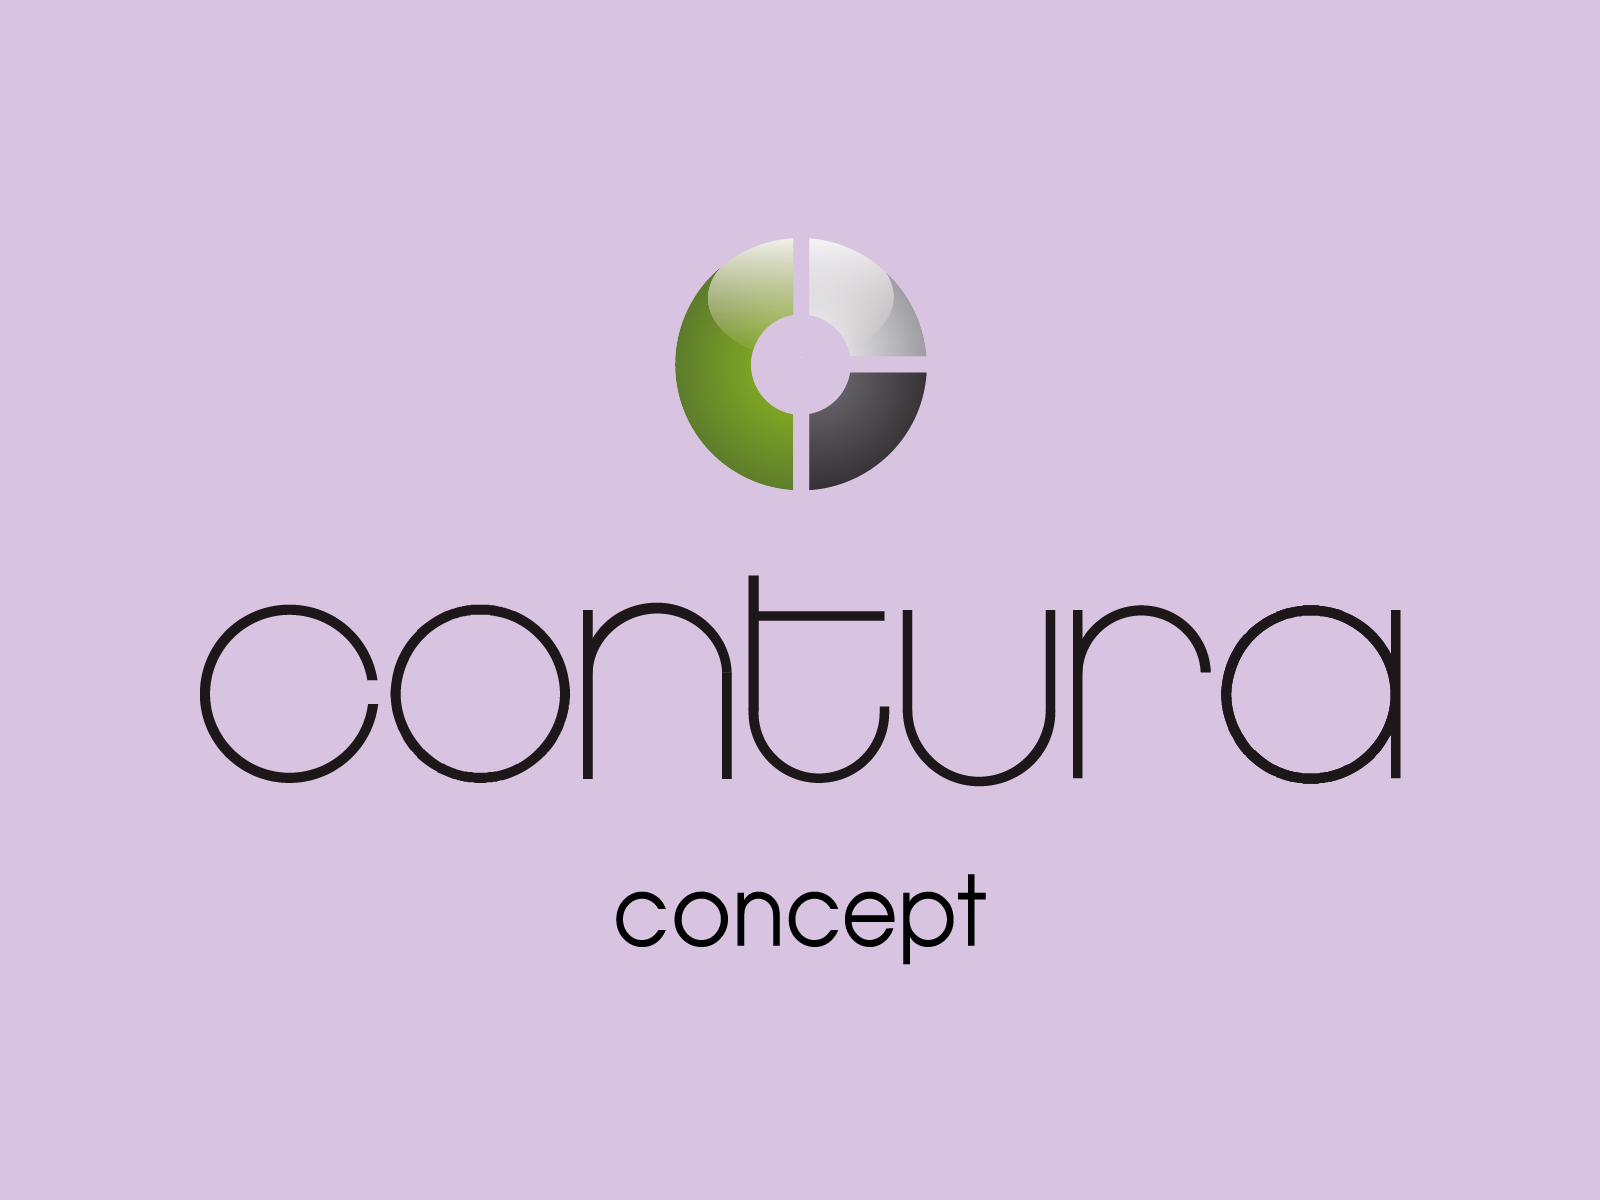 logo_contura_concept_dortmund